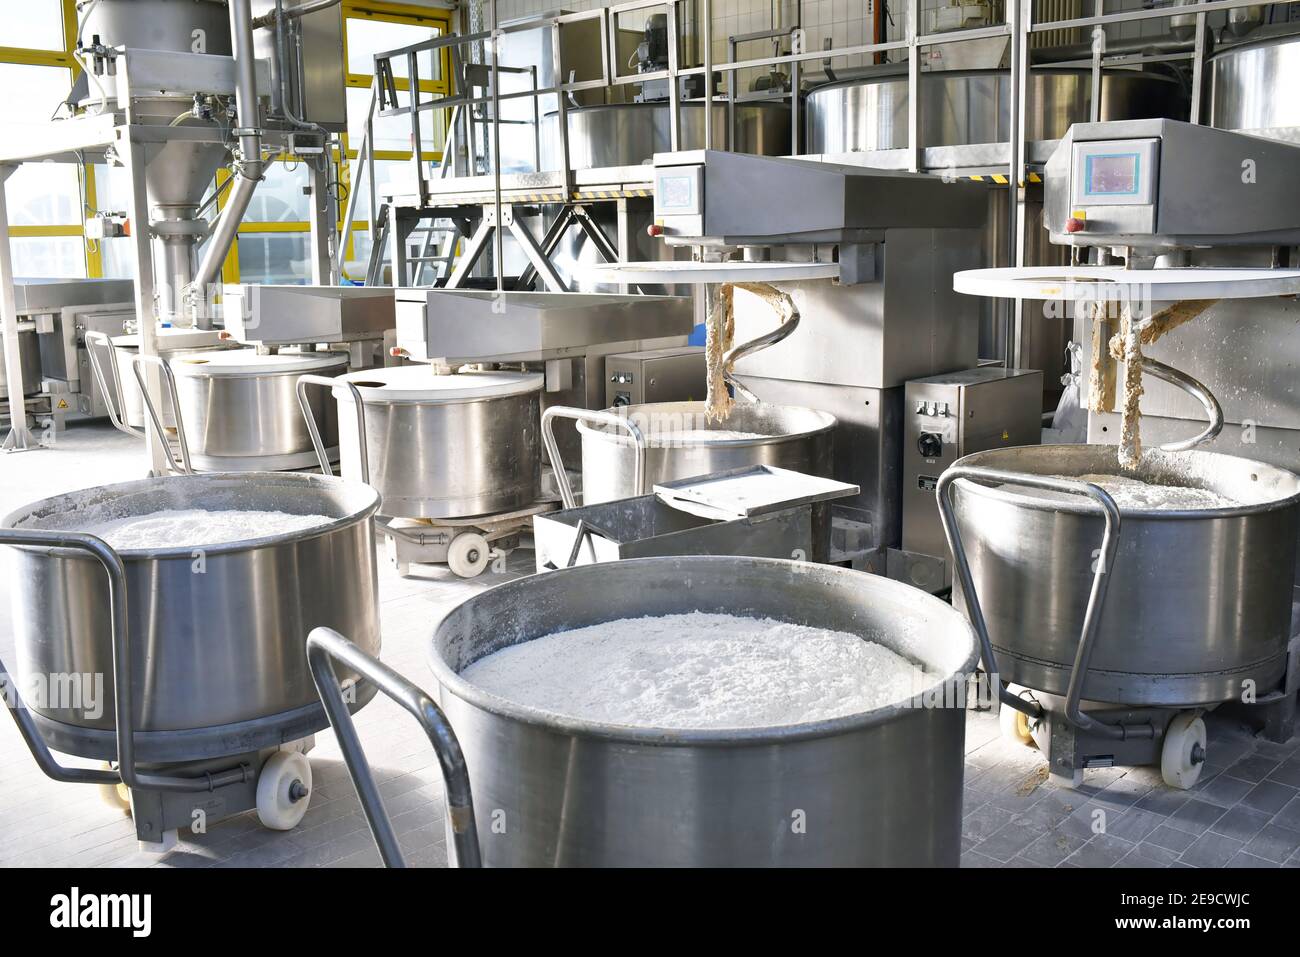 production industrielle de produits de boulangerie sur une chaîne d'assemblage - technologie et machines dans l'usine alimentaire Banque D'Images